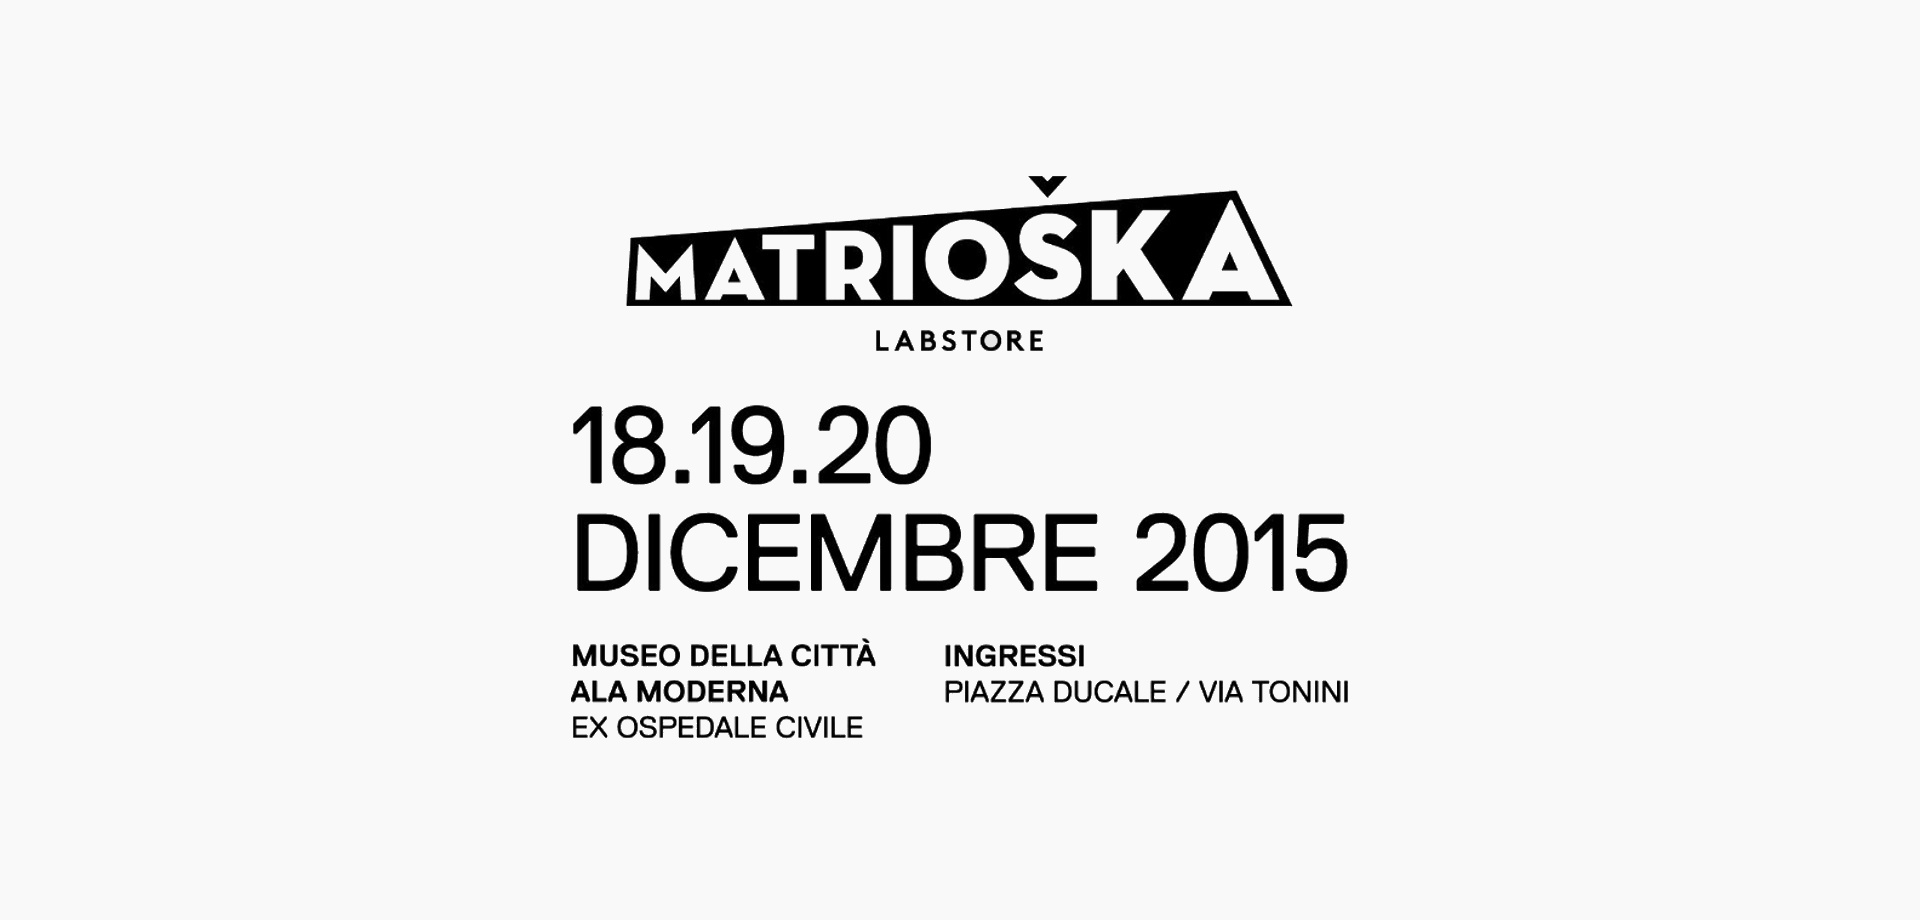 Matrioska labstore Rimini | edizione #8 | Dove e quando | Programma